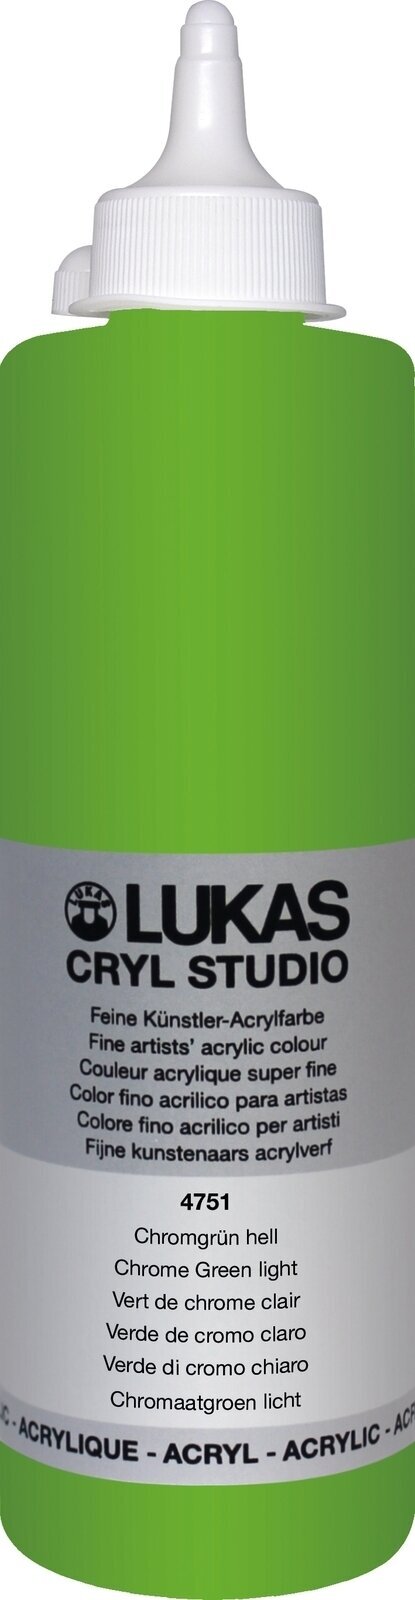 Tinta acrílica Lukas Cryl Studio Tinta acrílica 500 ml Chrome Green Light